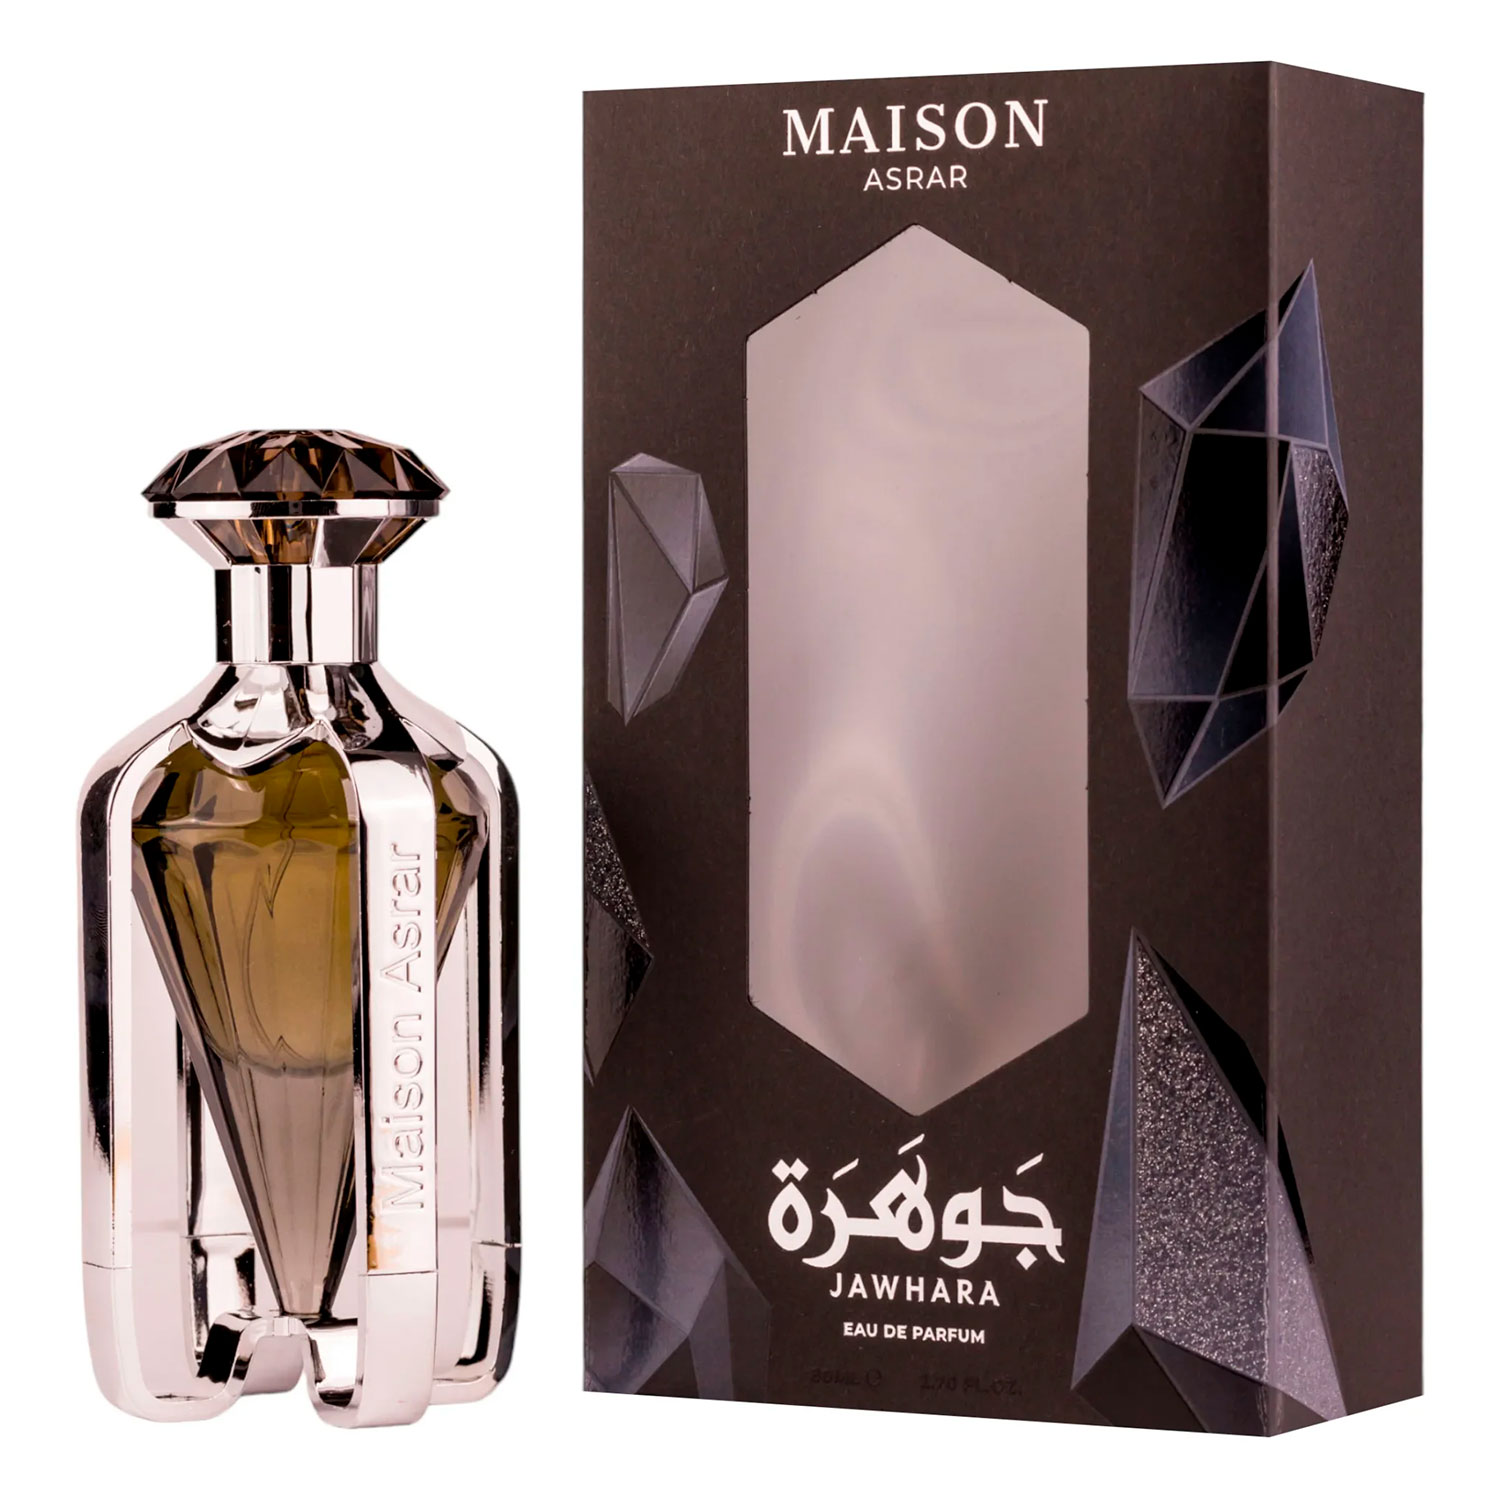 Perfume Maison Asrar Jawhara Eau de Parfum Masculino 80ml